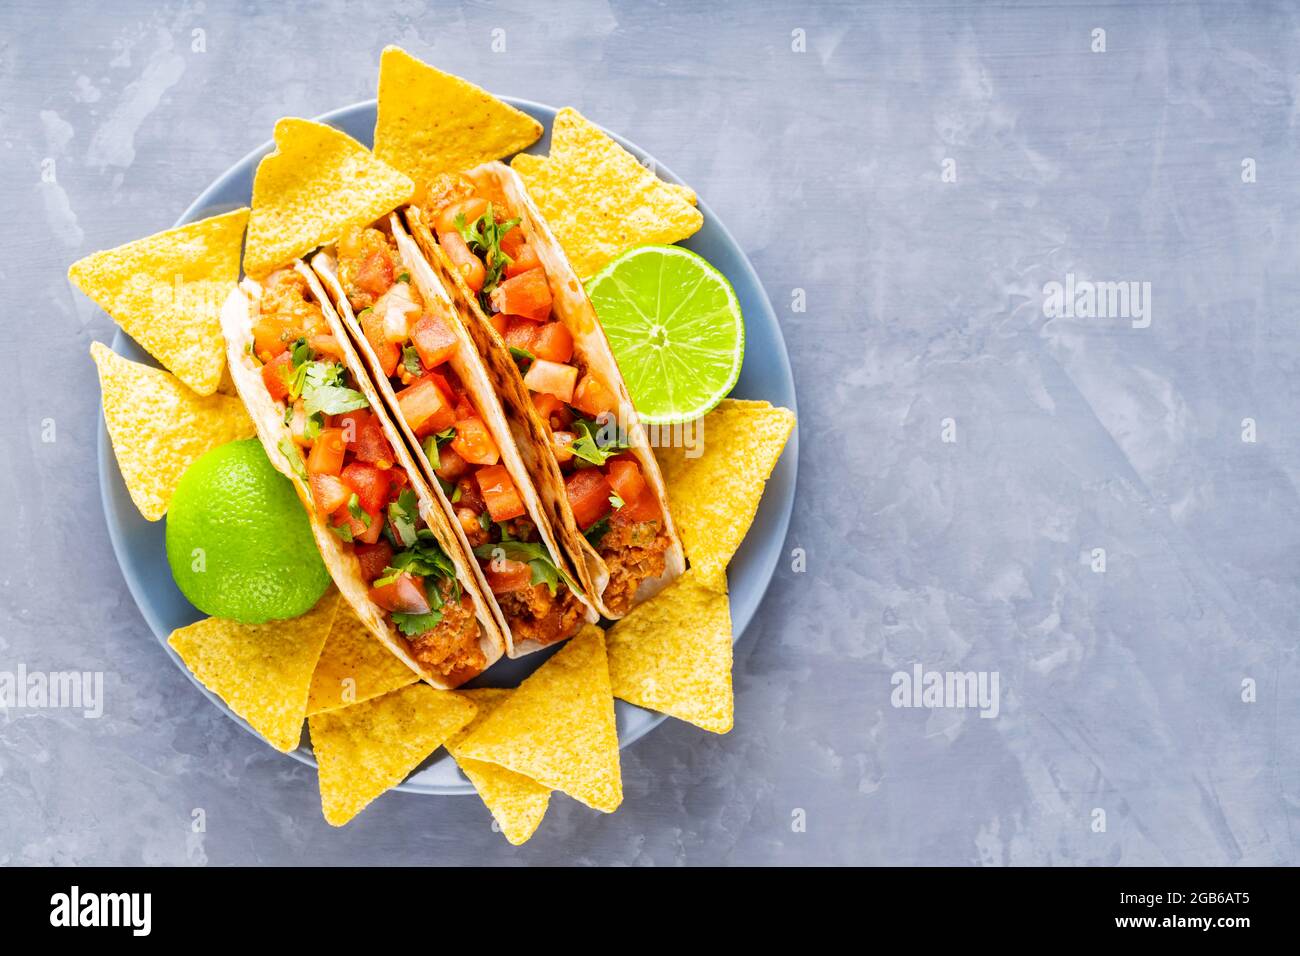 Tacos mexicains et jetons nacho sur une assiette. Tacos et chips tortilla  sur fond gris. Cuisine mexicaine hispanique. Copier l'espace. Pose à plat  Photo Stock - Alamy